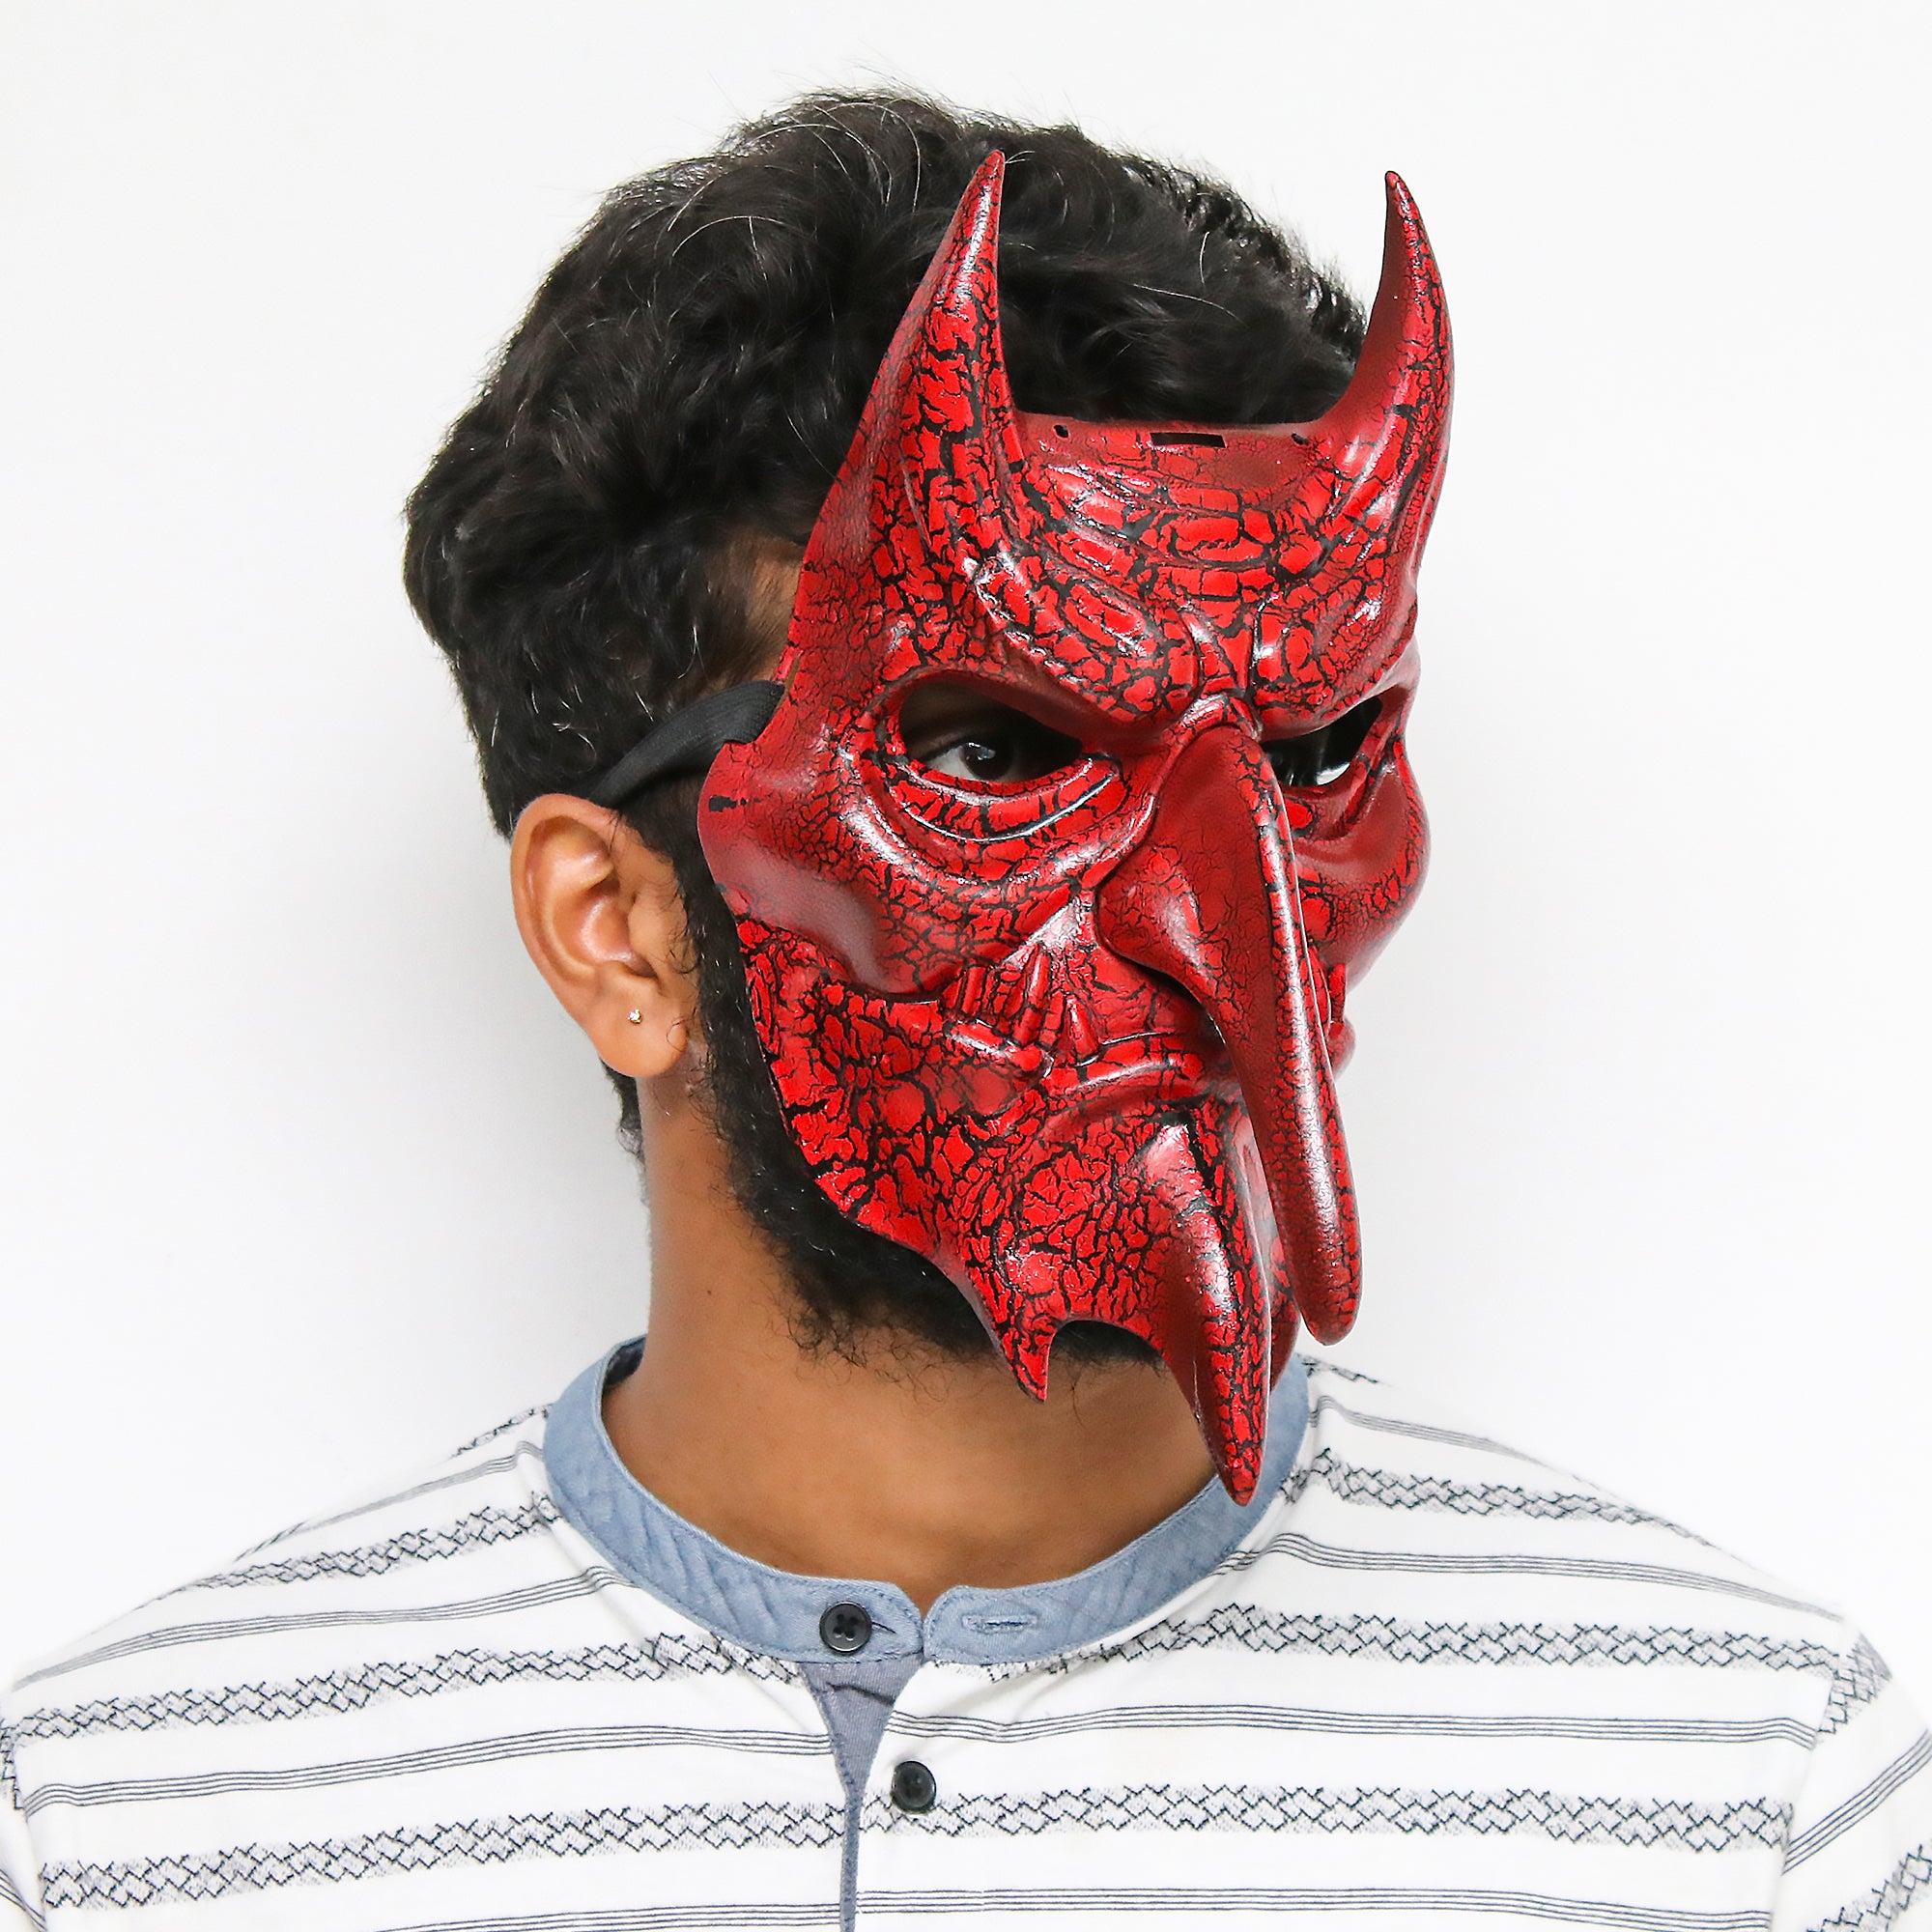 Long Nose Red Devil Mask